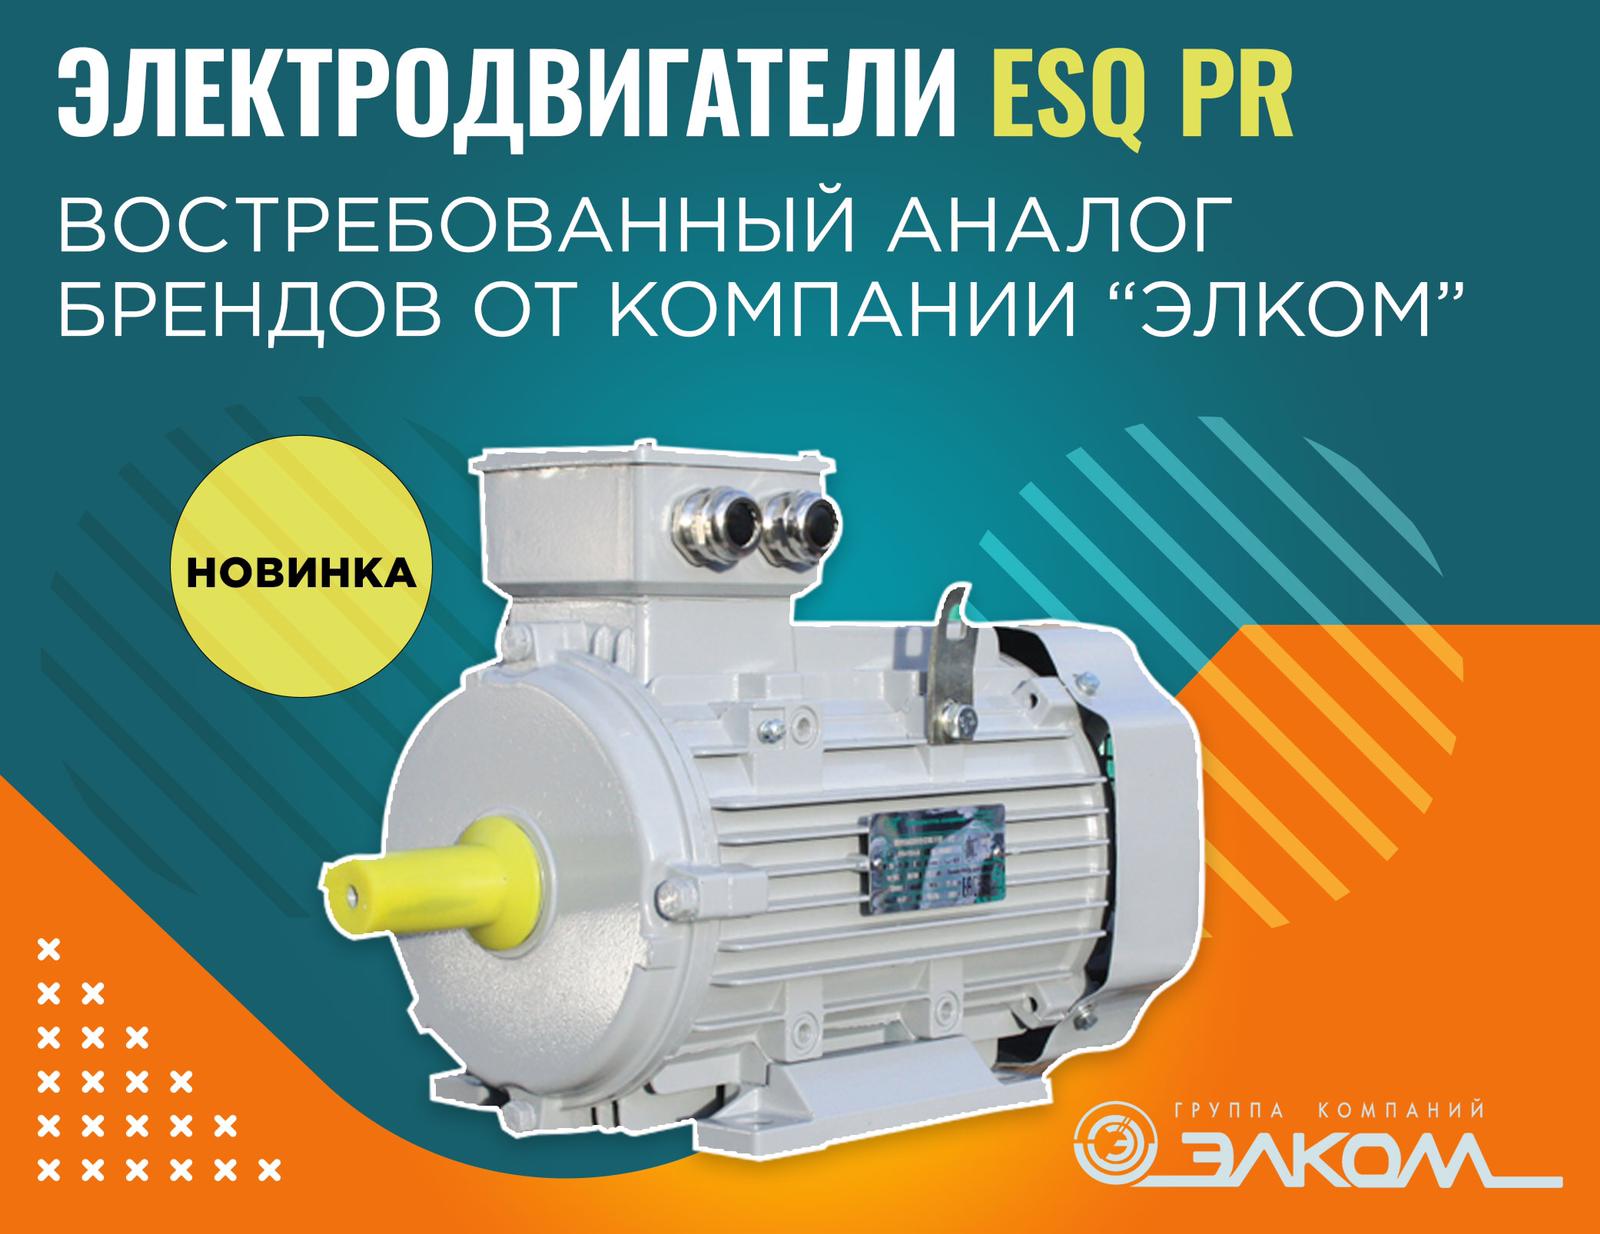 Электродвигатели ESQ PR - востребованный аналог западных брендов от компании «Элком»